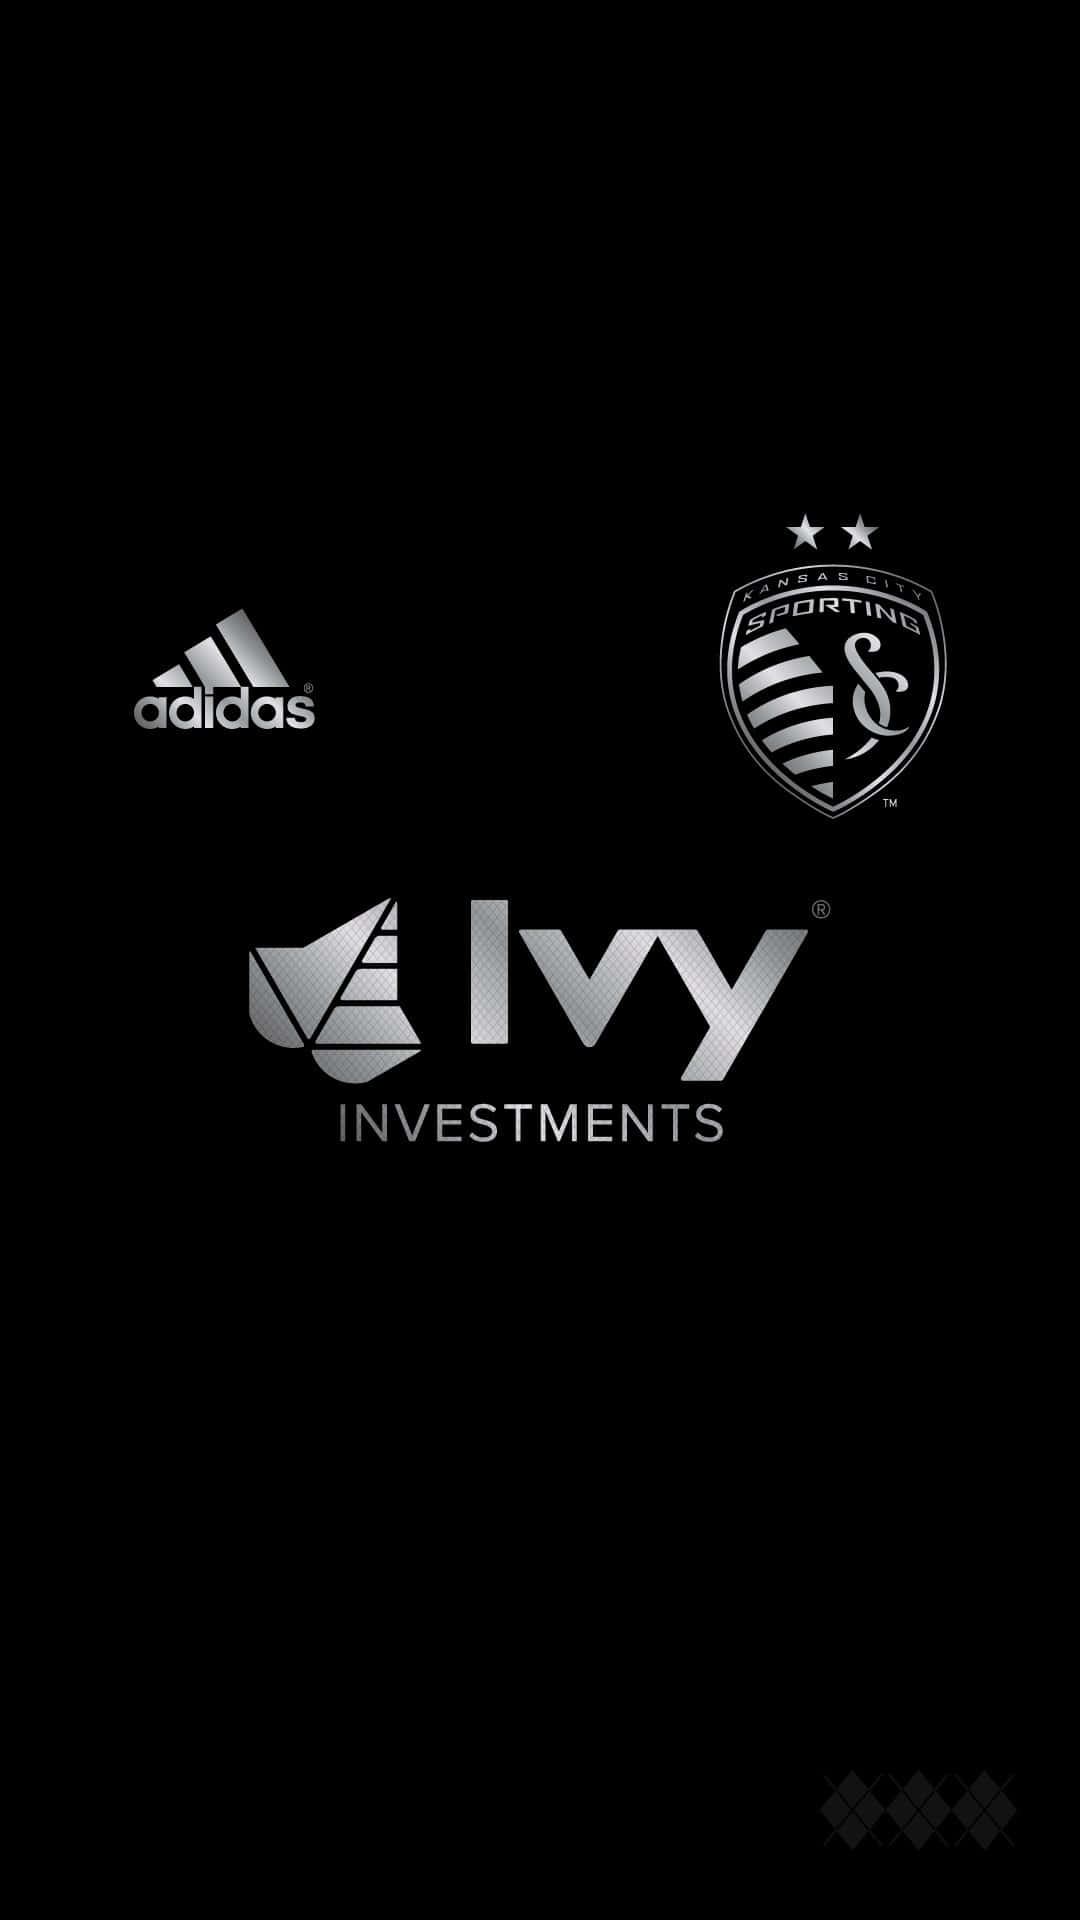 Logodello Sporting Kansas City Con Adidas E Ivy Investments. Sfondo